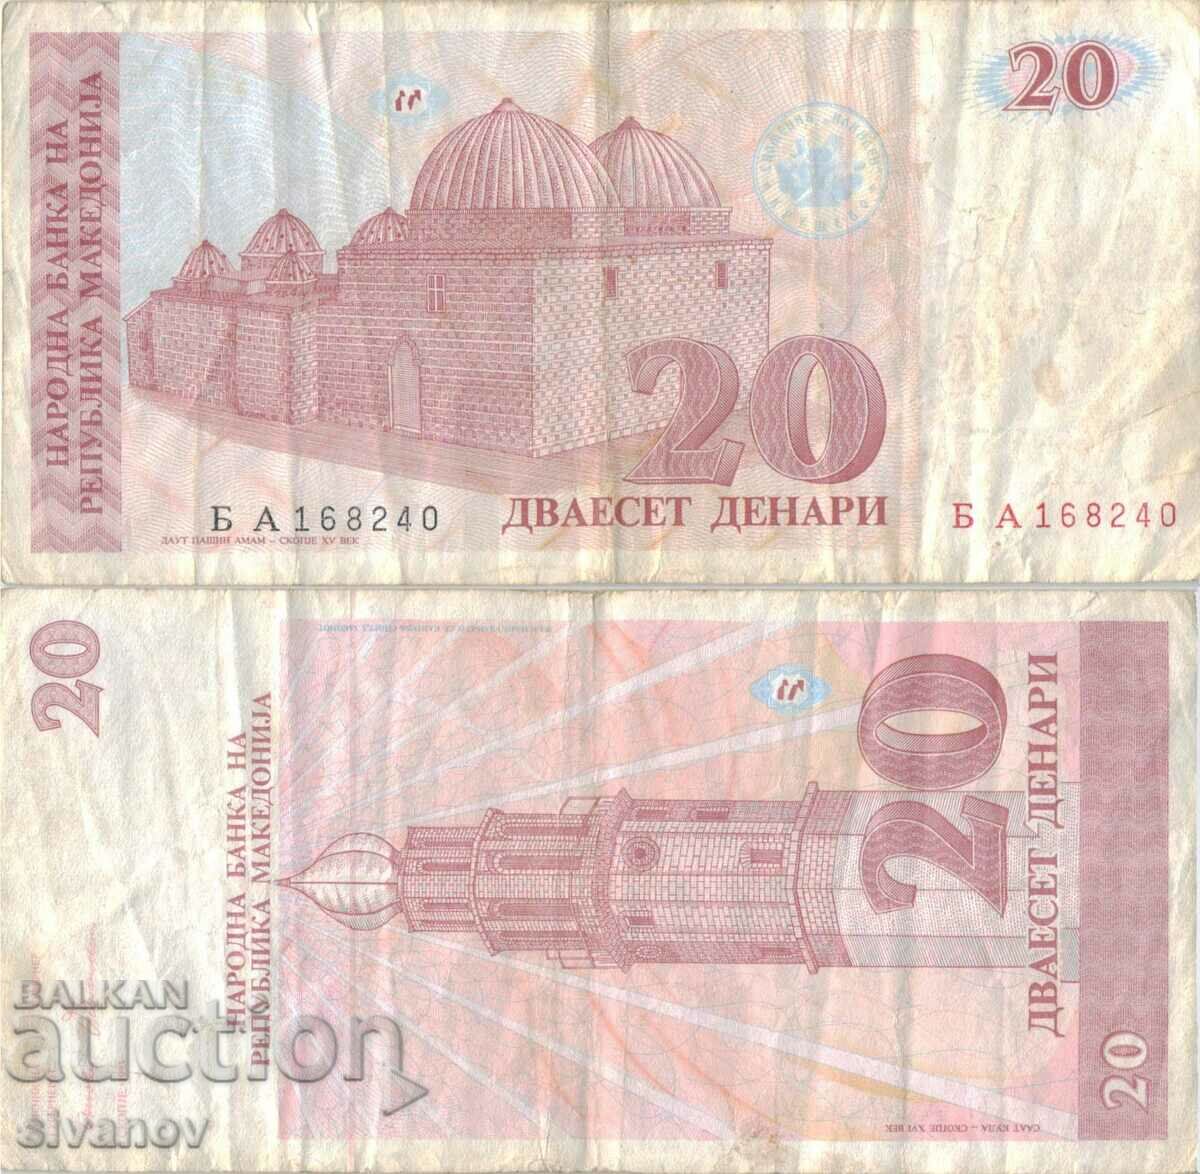 Μακεδονία 20 denar τραπεζογραμμάτιο 1993 #5215